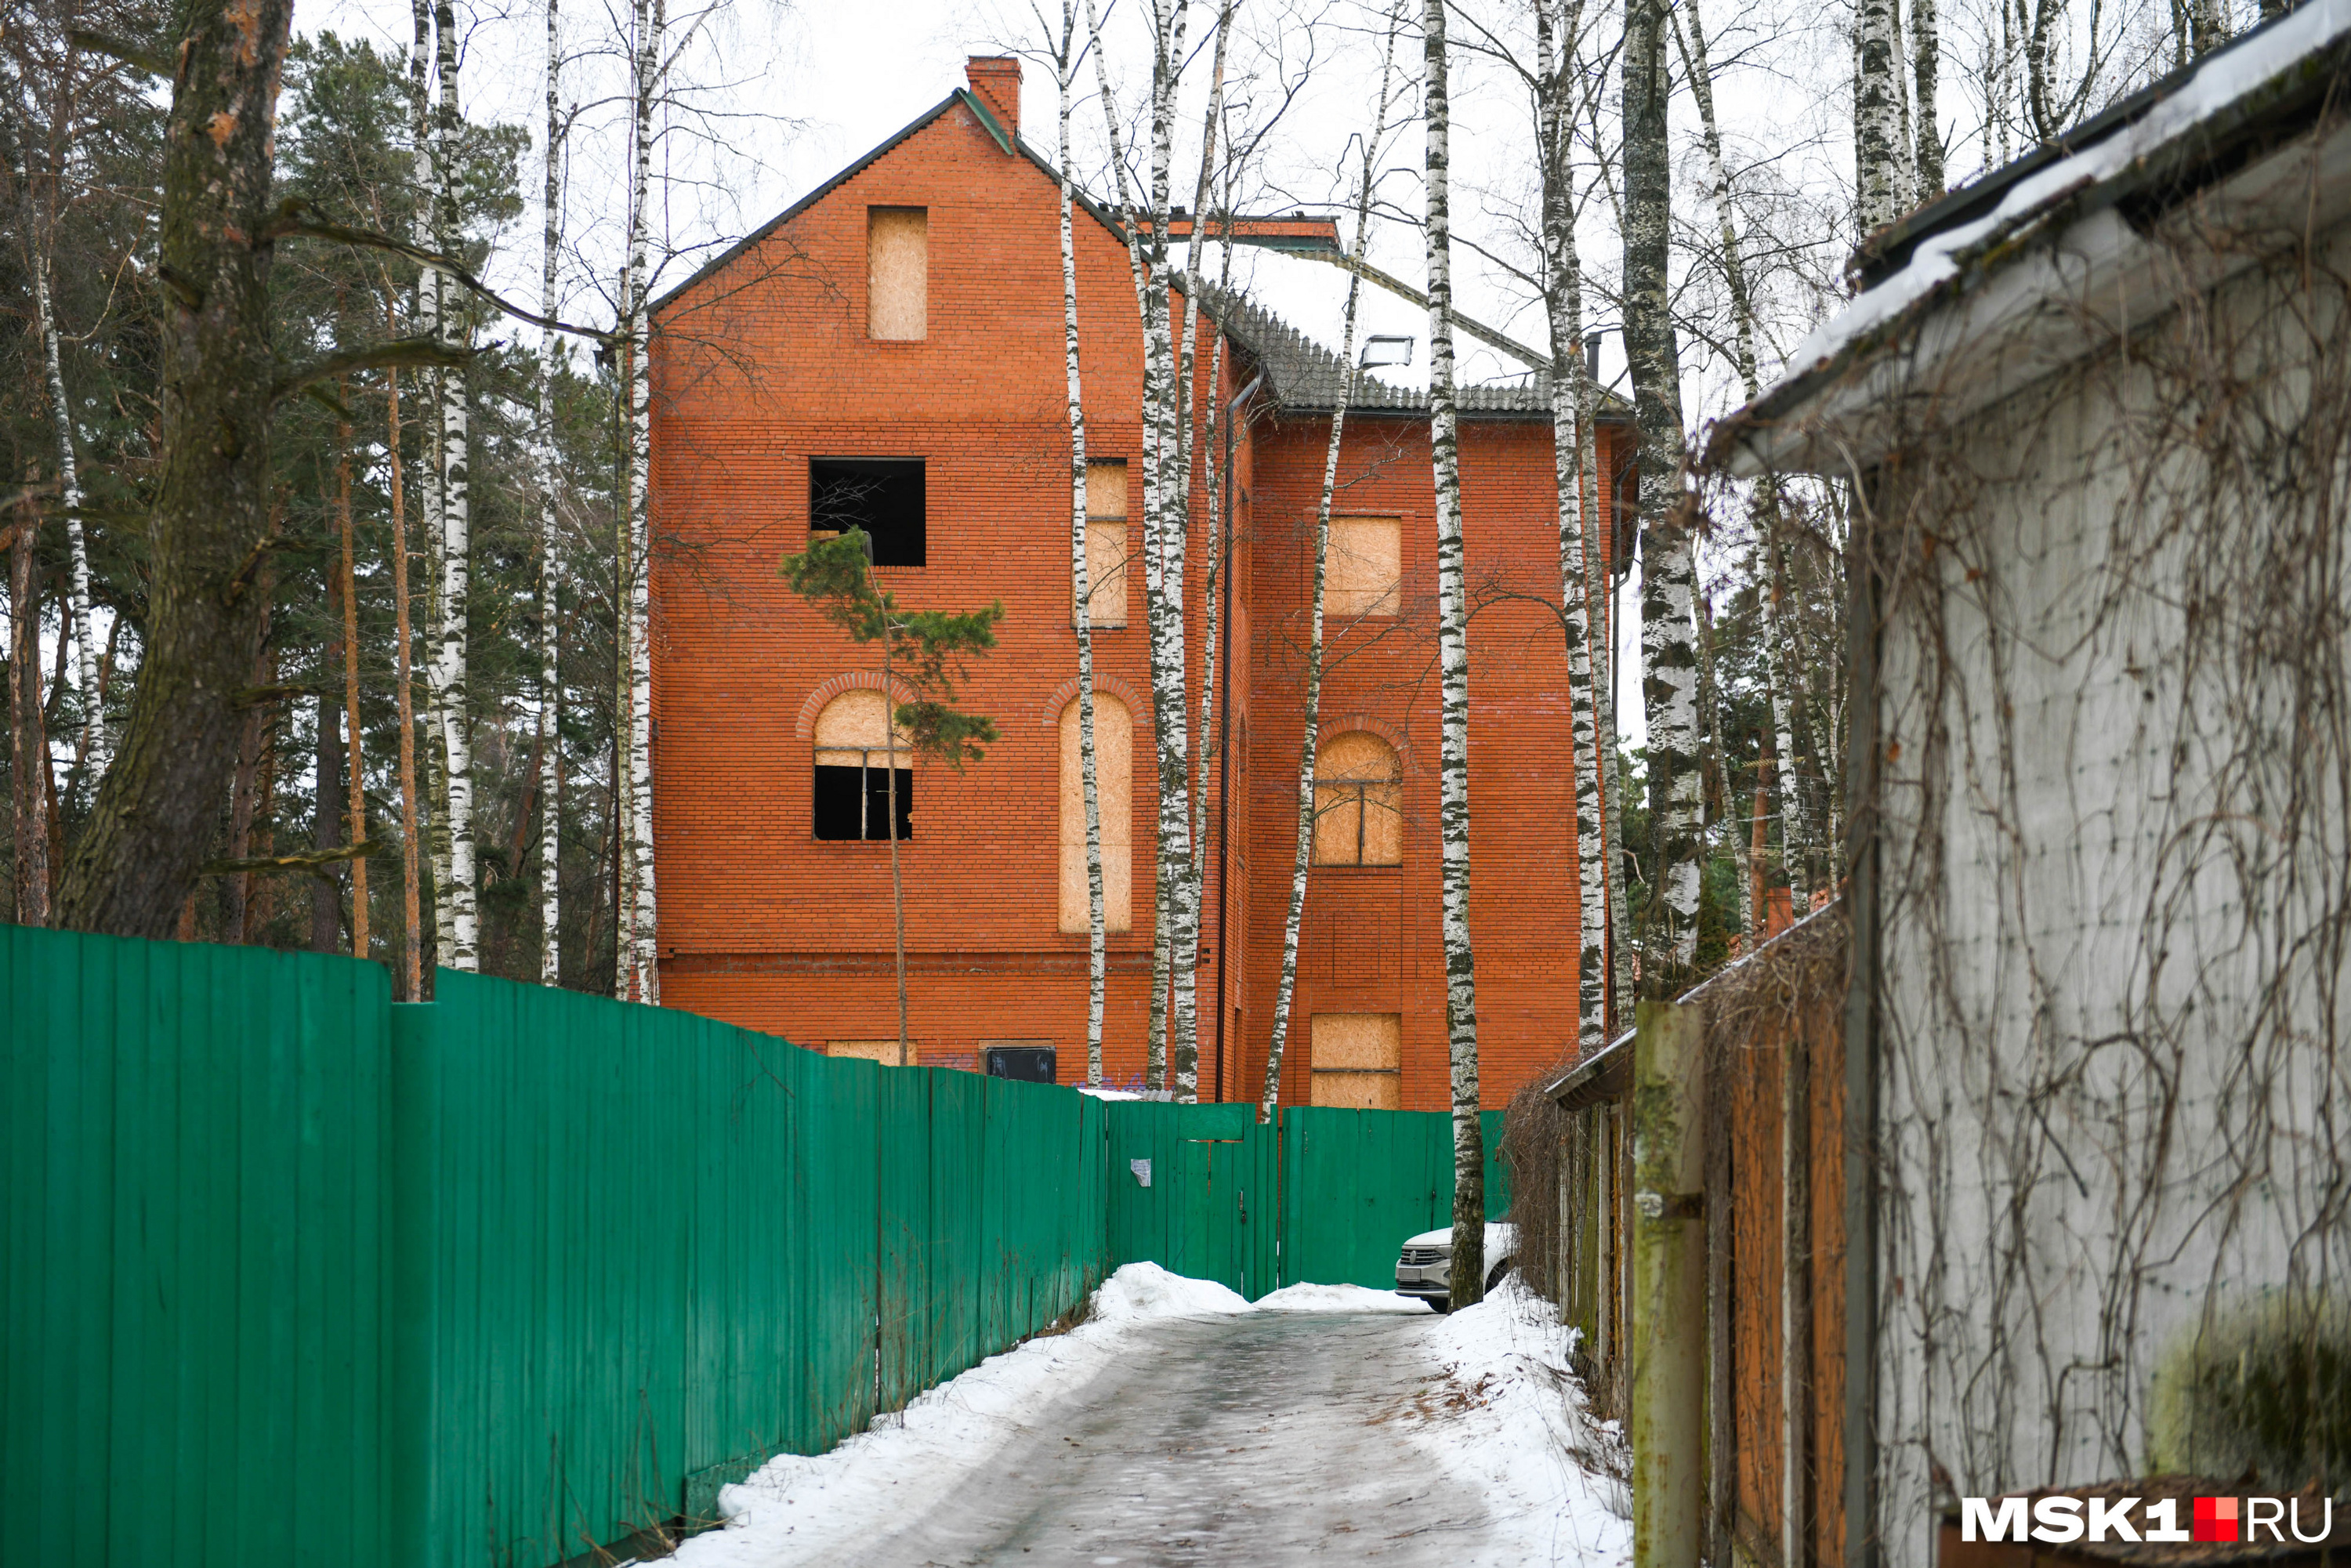 Часть самых шикарных, видовых участков в Жуковке заняли, судя по архитектуре, в нулевые. Многие дома на такой земле стоят недостроенными